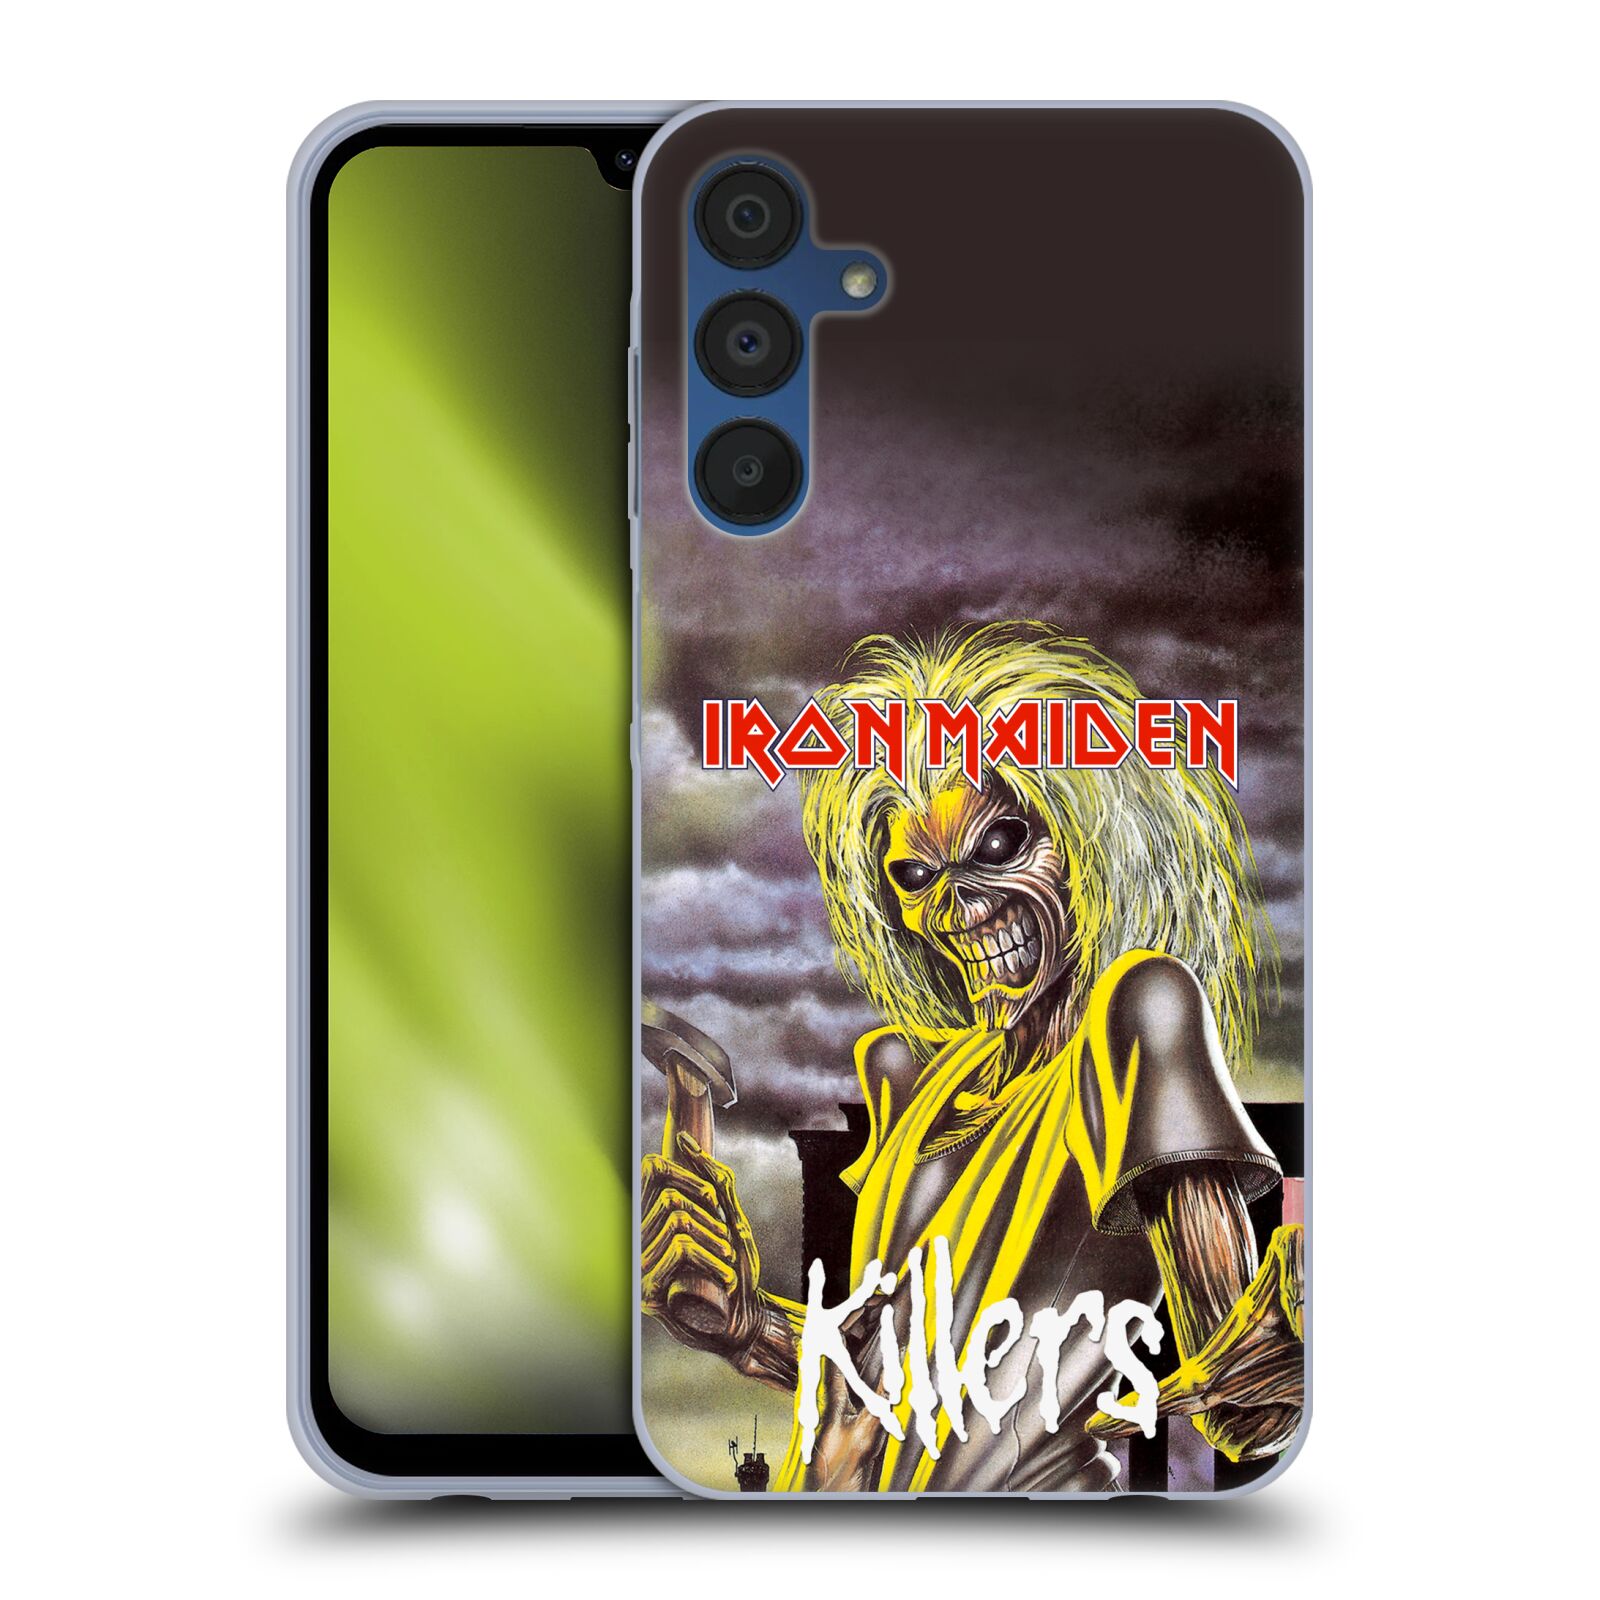 Silikonové pouzdro na mobil Samsung Galaxy A15 / A15 5G - Head Case - Iron Maiden - Killers (Silikonový kryt, obal, pouzdro na mobilní telefon Samsung Galaxy A15 / A15 5G s motivem Iron Maiden - Killers)